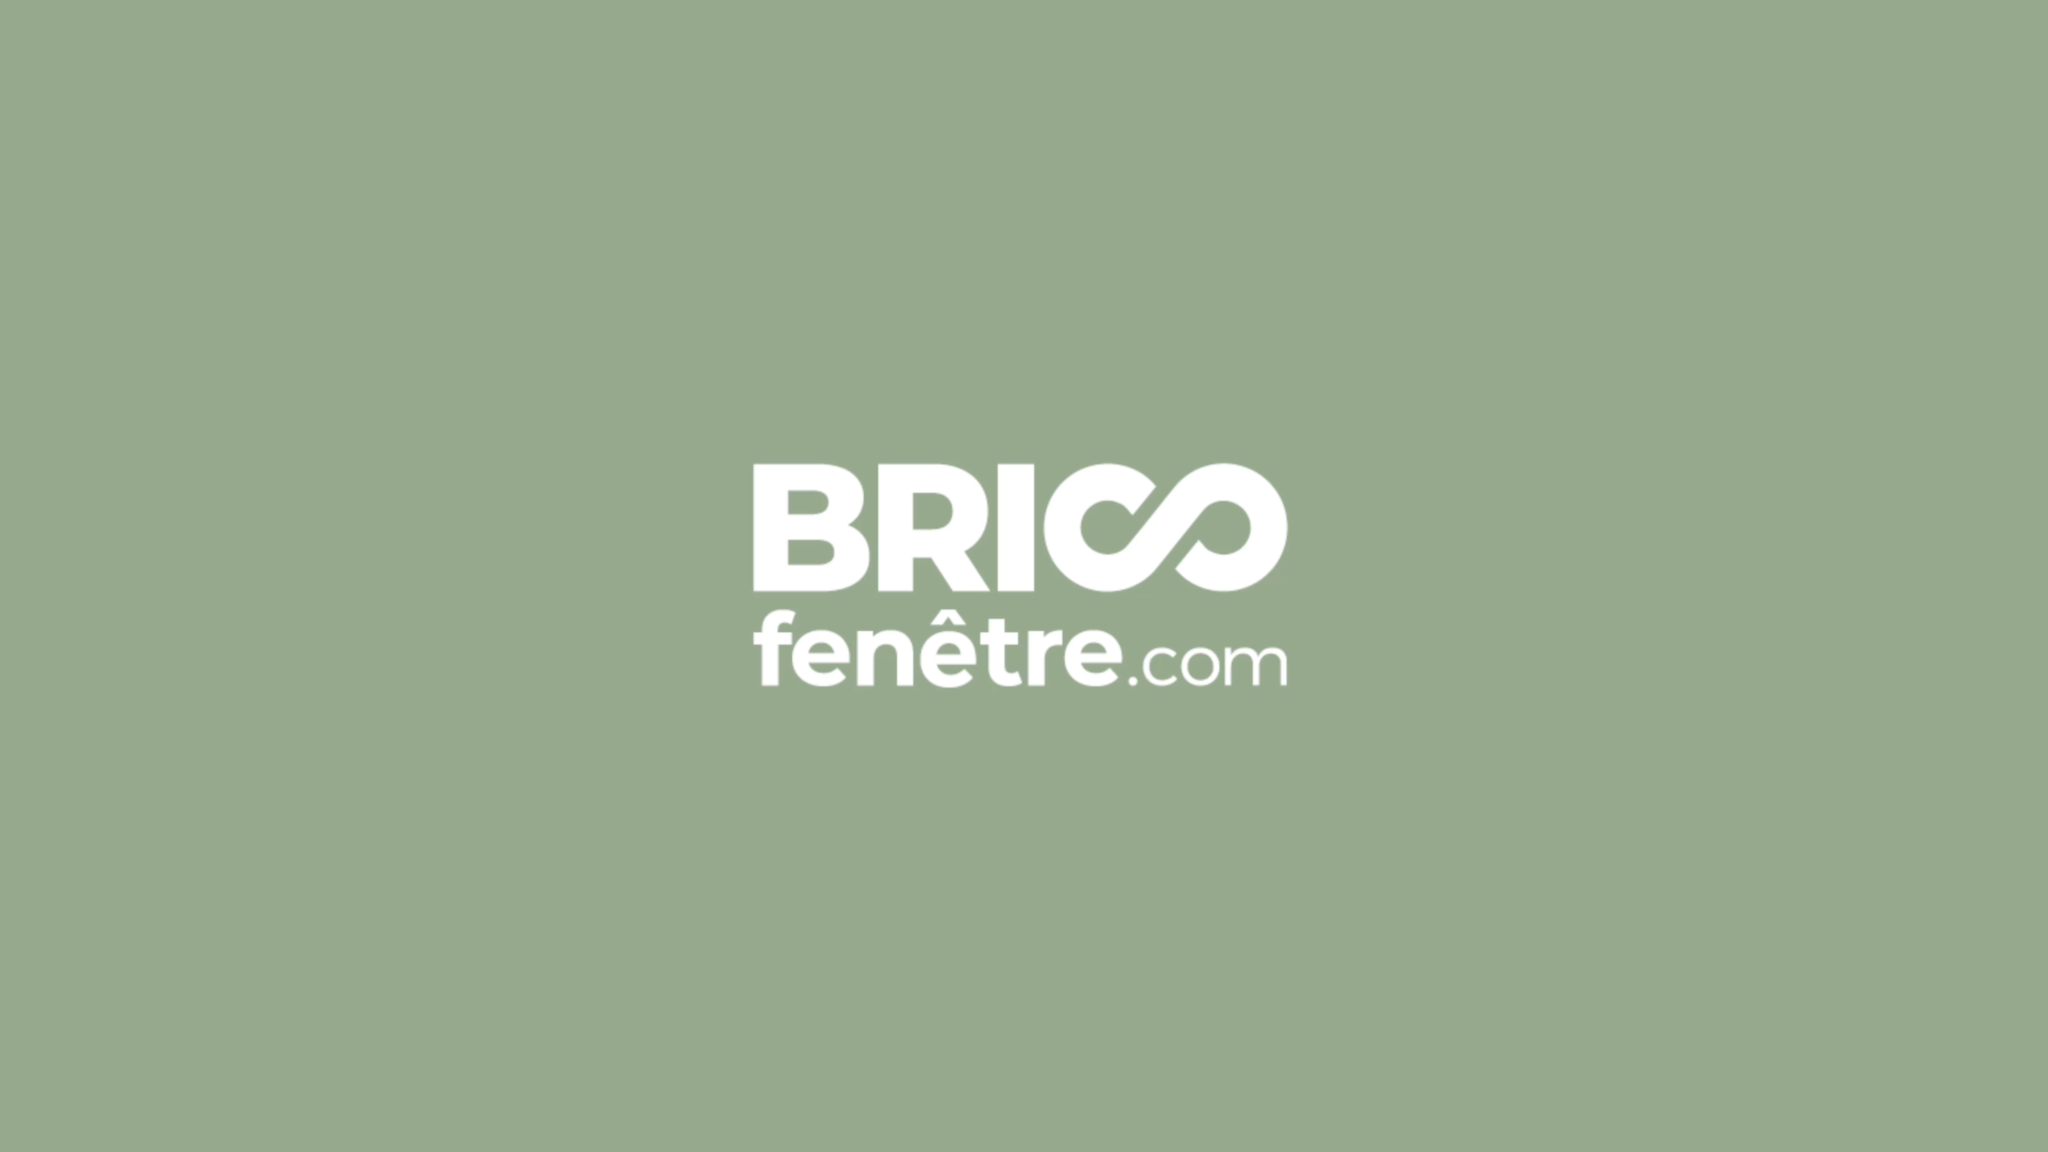 BRICOFENETRE.COM